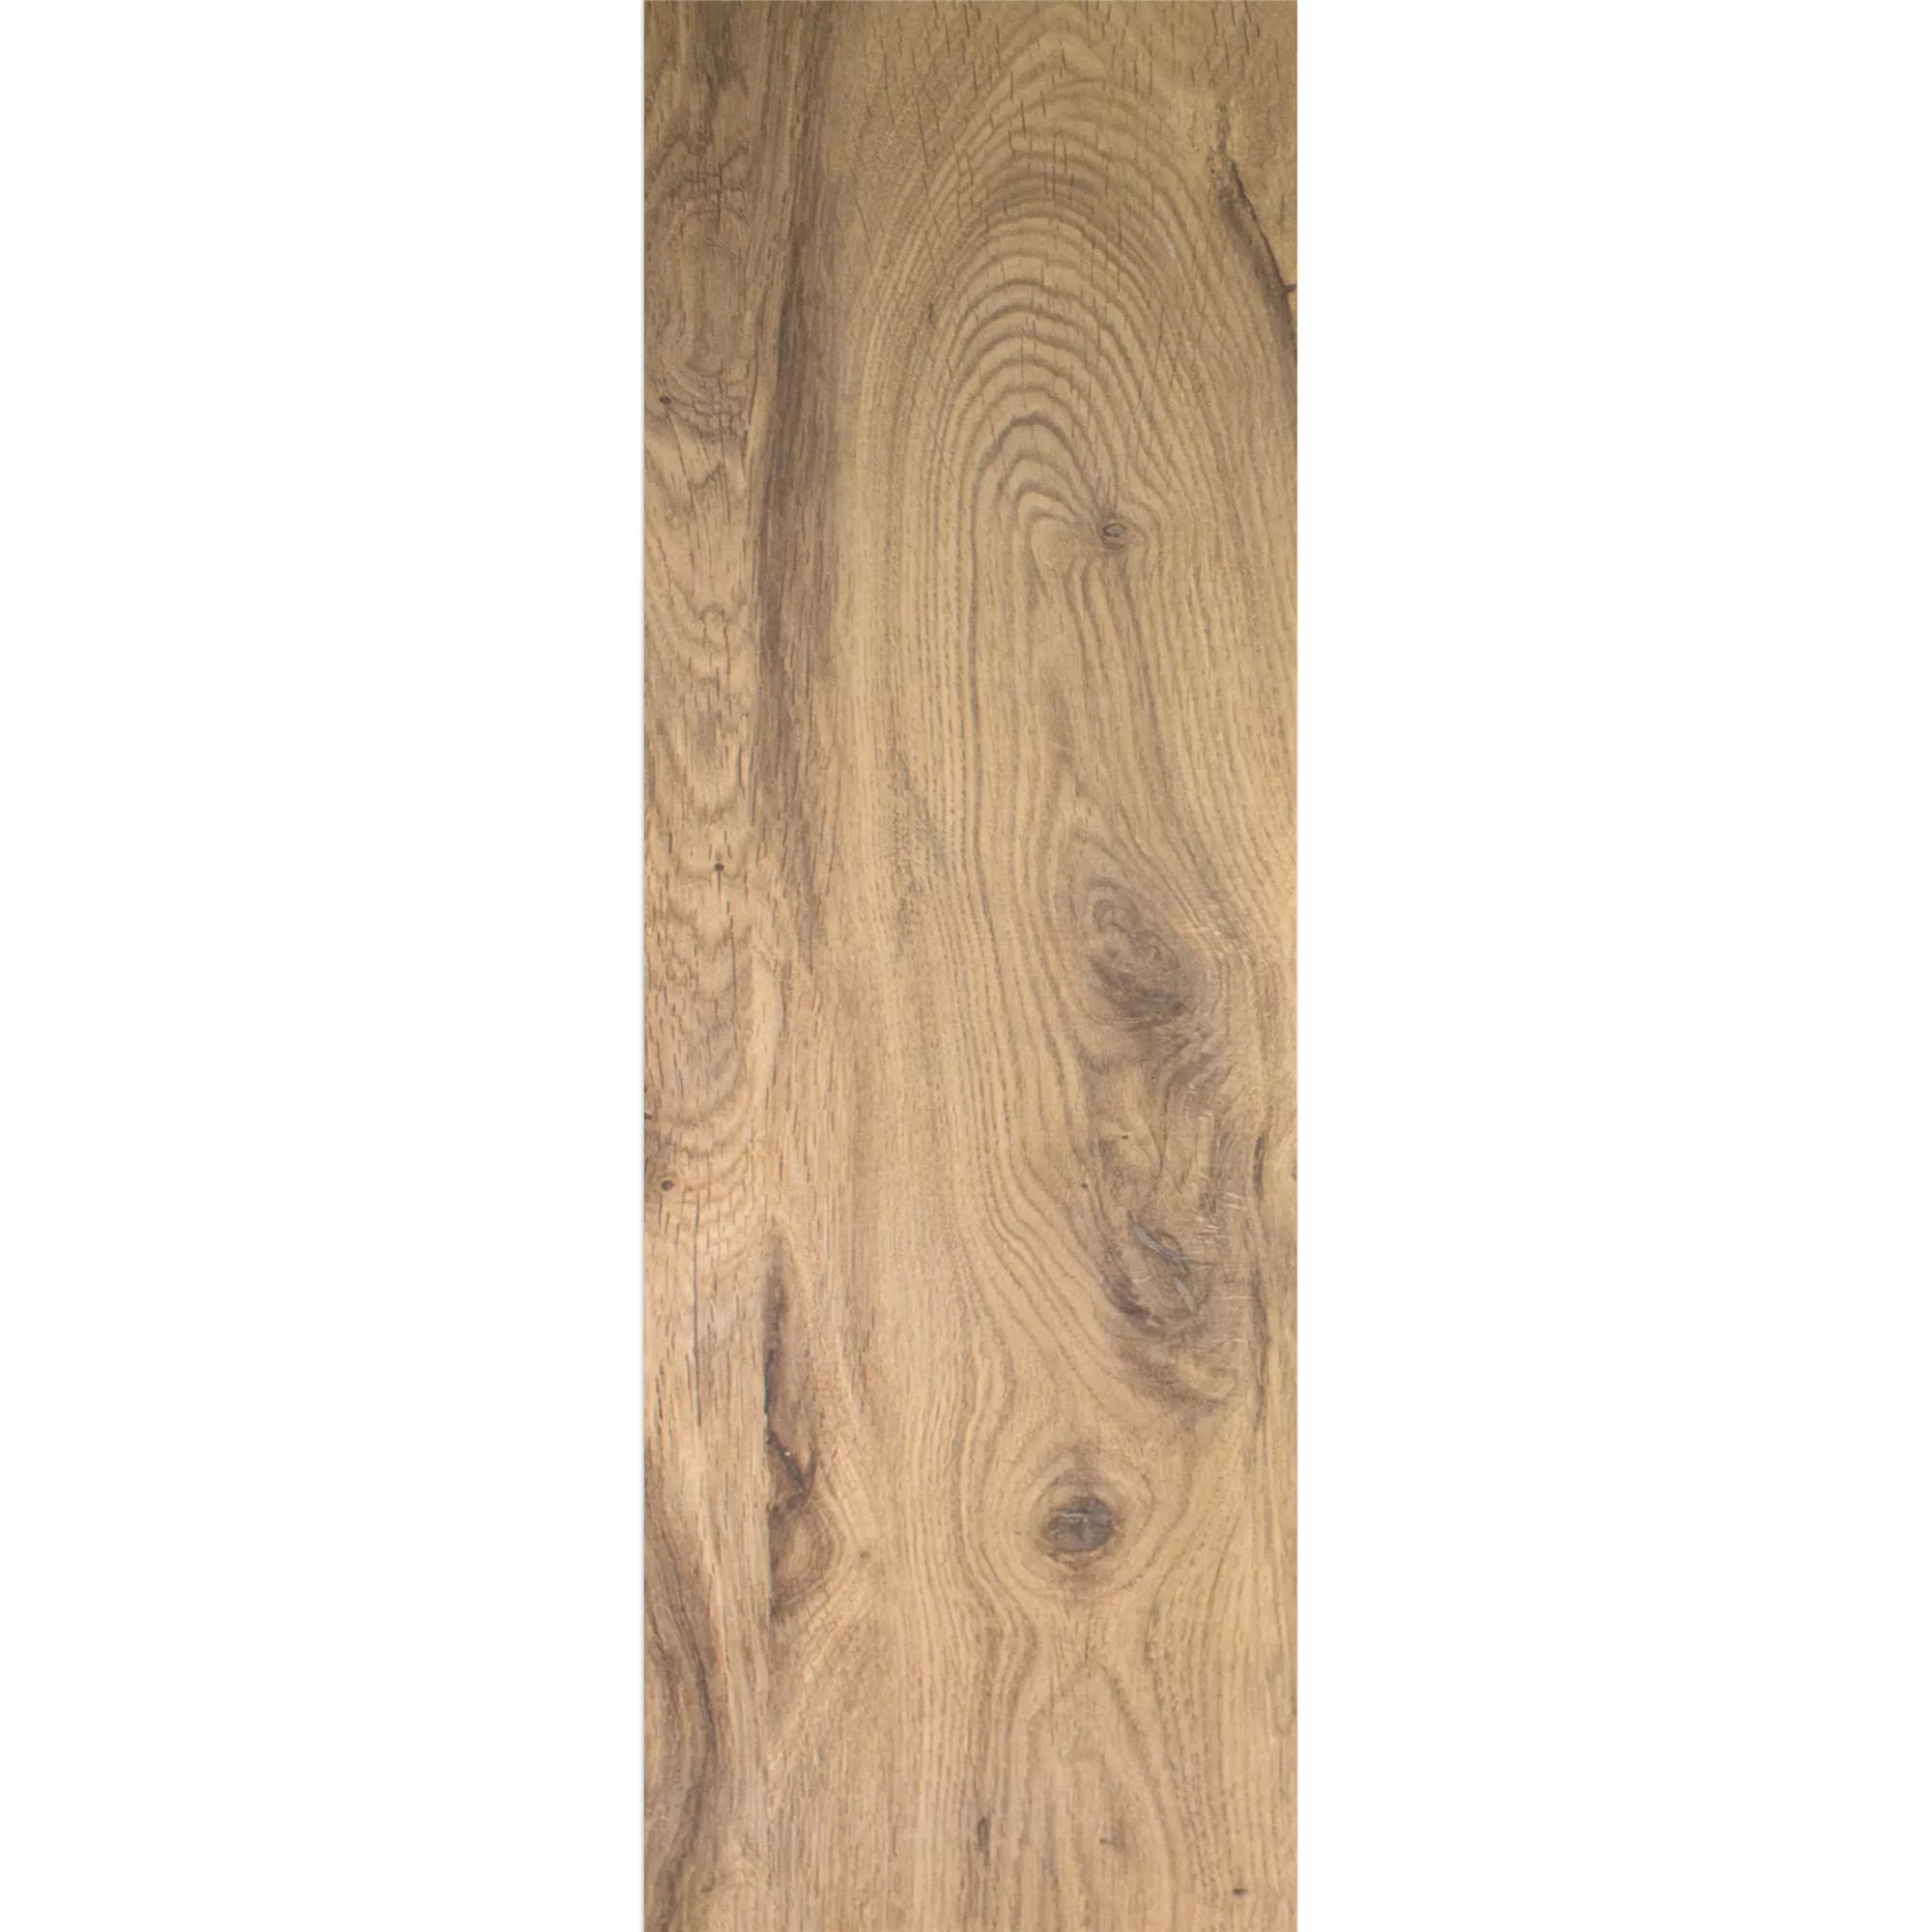 Próbka Płytki Podłogowe Herakles Wygląd Drewna Noce 20x120cm